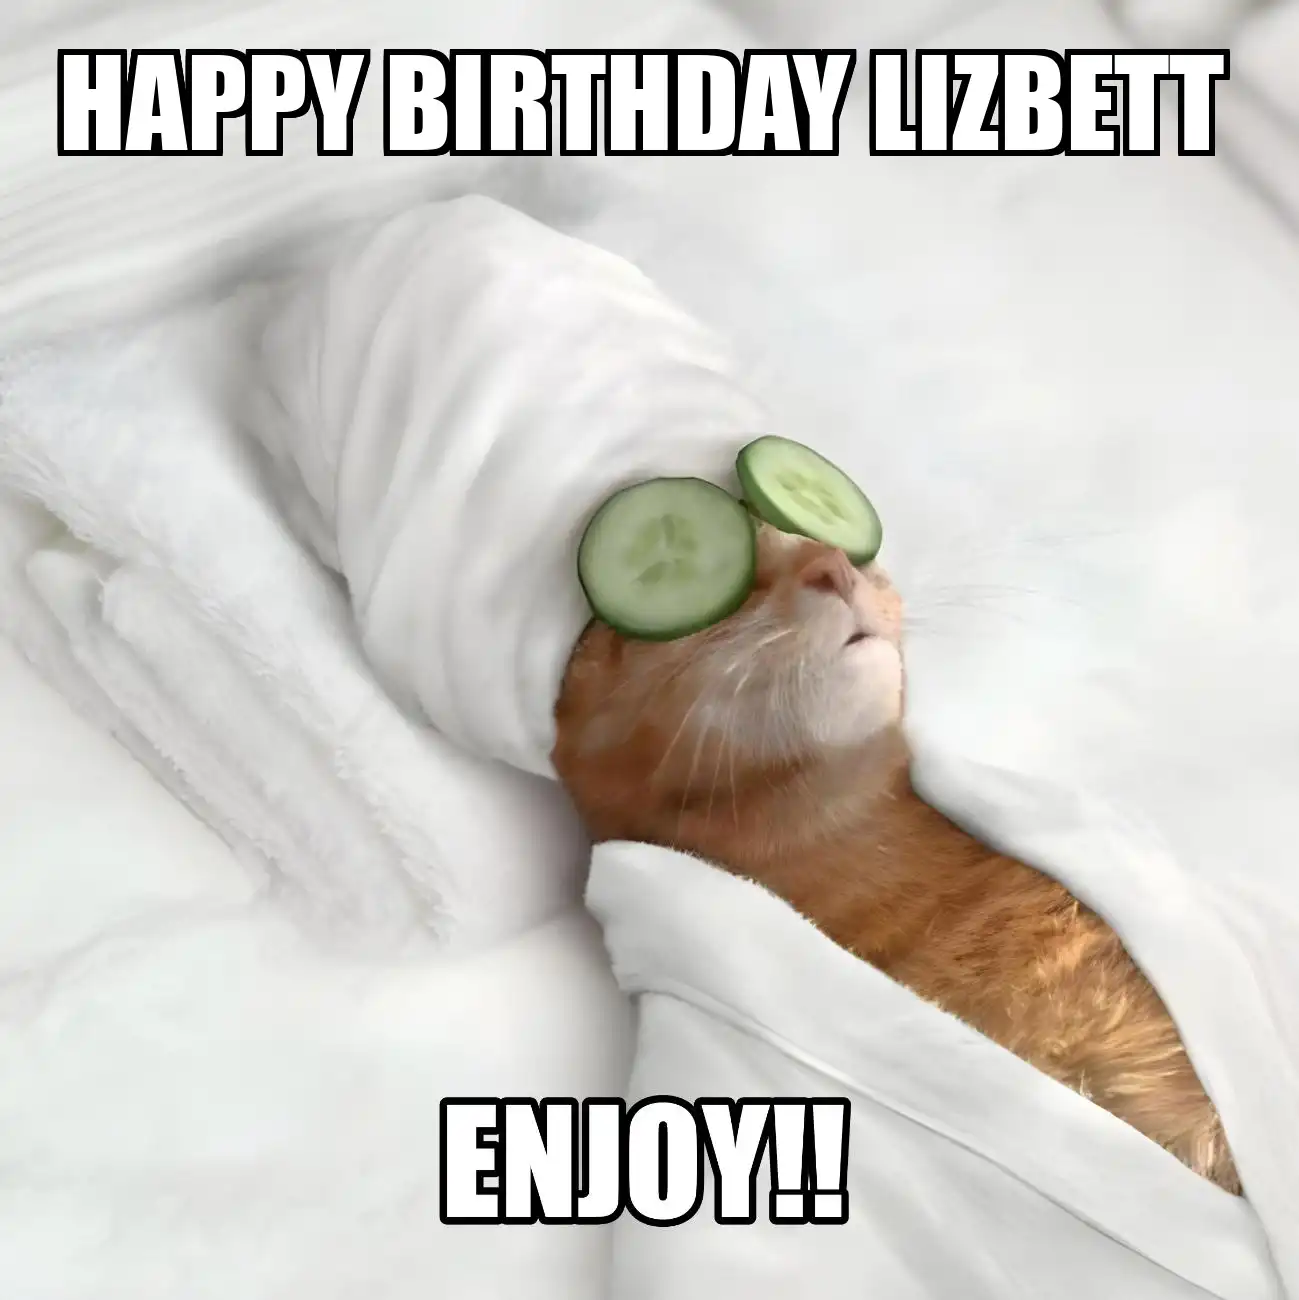 Happy Birthday Lizbett Enjoy Cat Meme